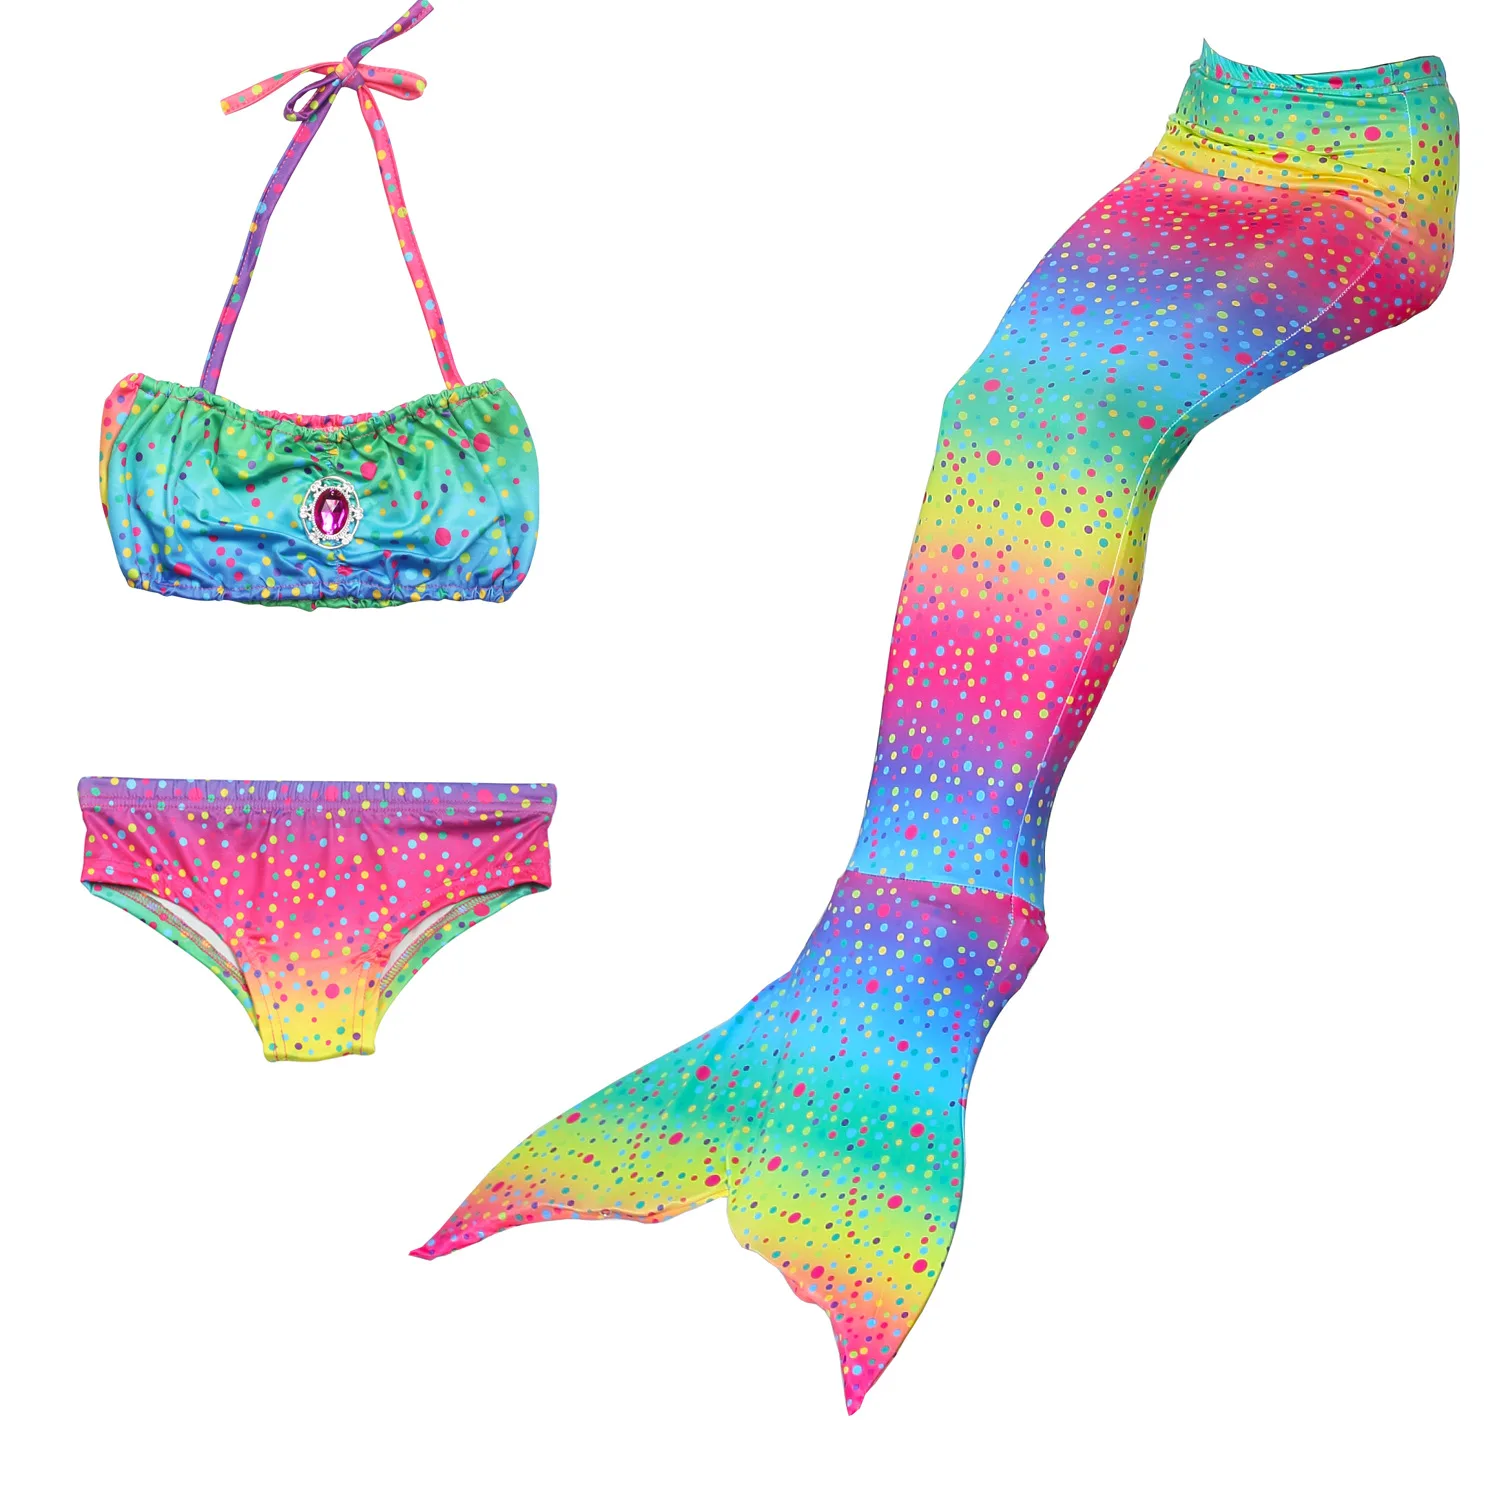 iLyberkiok Coda di Sirena 4 Pezzi Costumi da Bagno per Ragazze Bikini da Nuoto Costume di Bagno per Bambini Regalo di Compleanno 3-12 Anni No Monopinna 